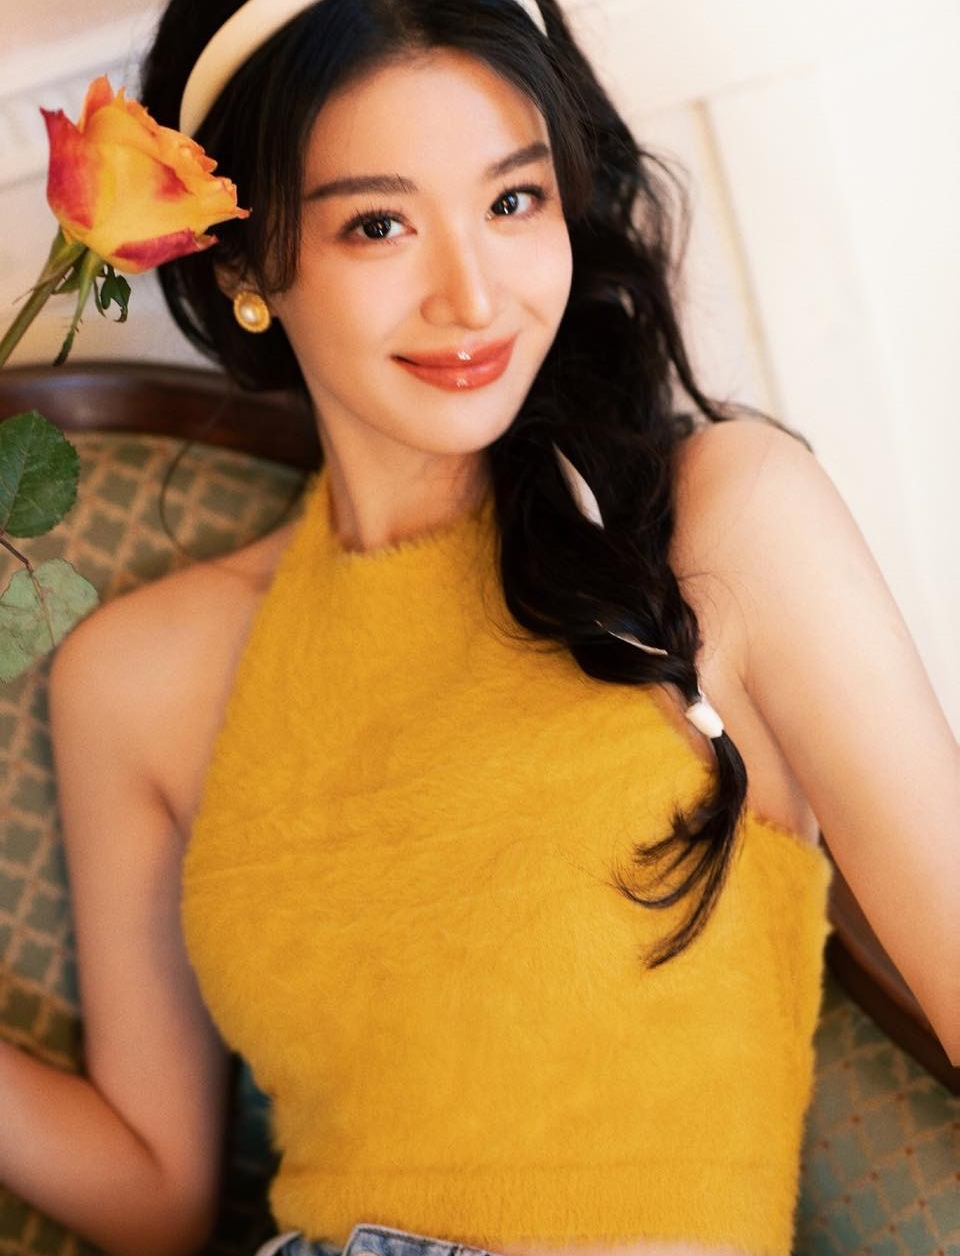 Sau vai Nguyễn Lưu Tranh trong phim “Nghe nói em thích tôi“, nữ diễn viên được khán giả chú ý và vụt sáng trở thành một ngôi sao được săn đón.  